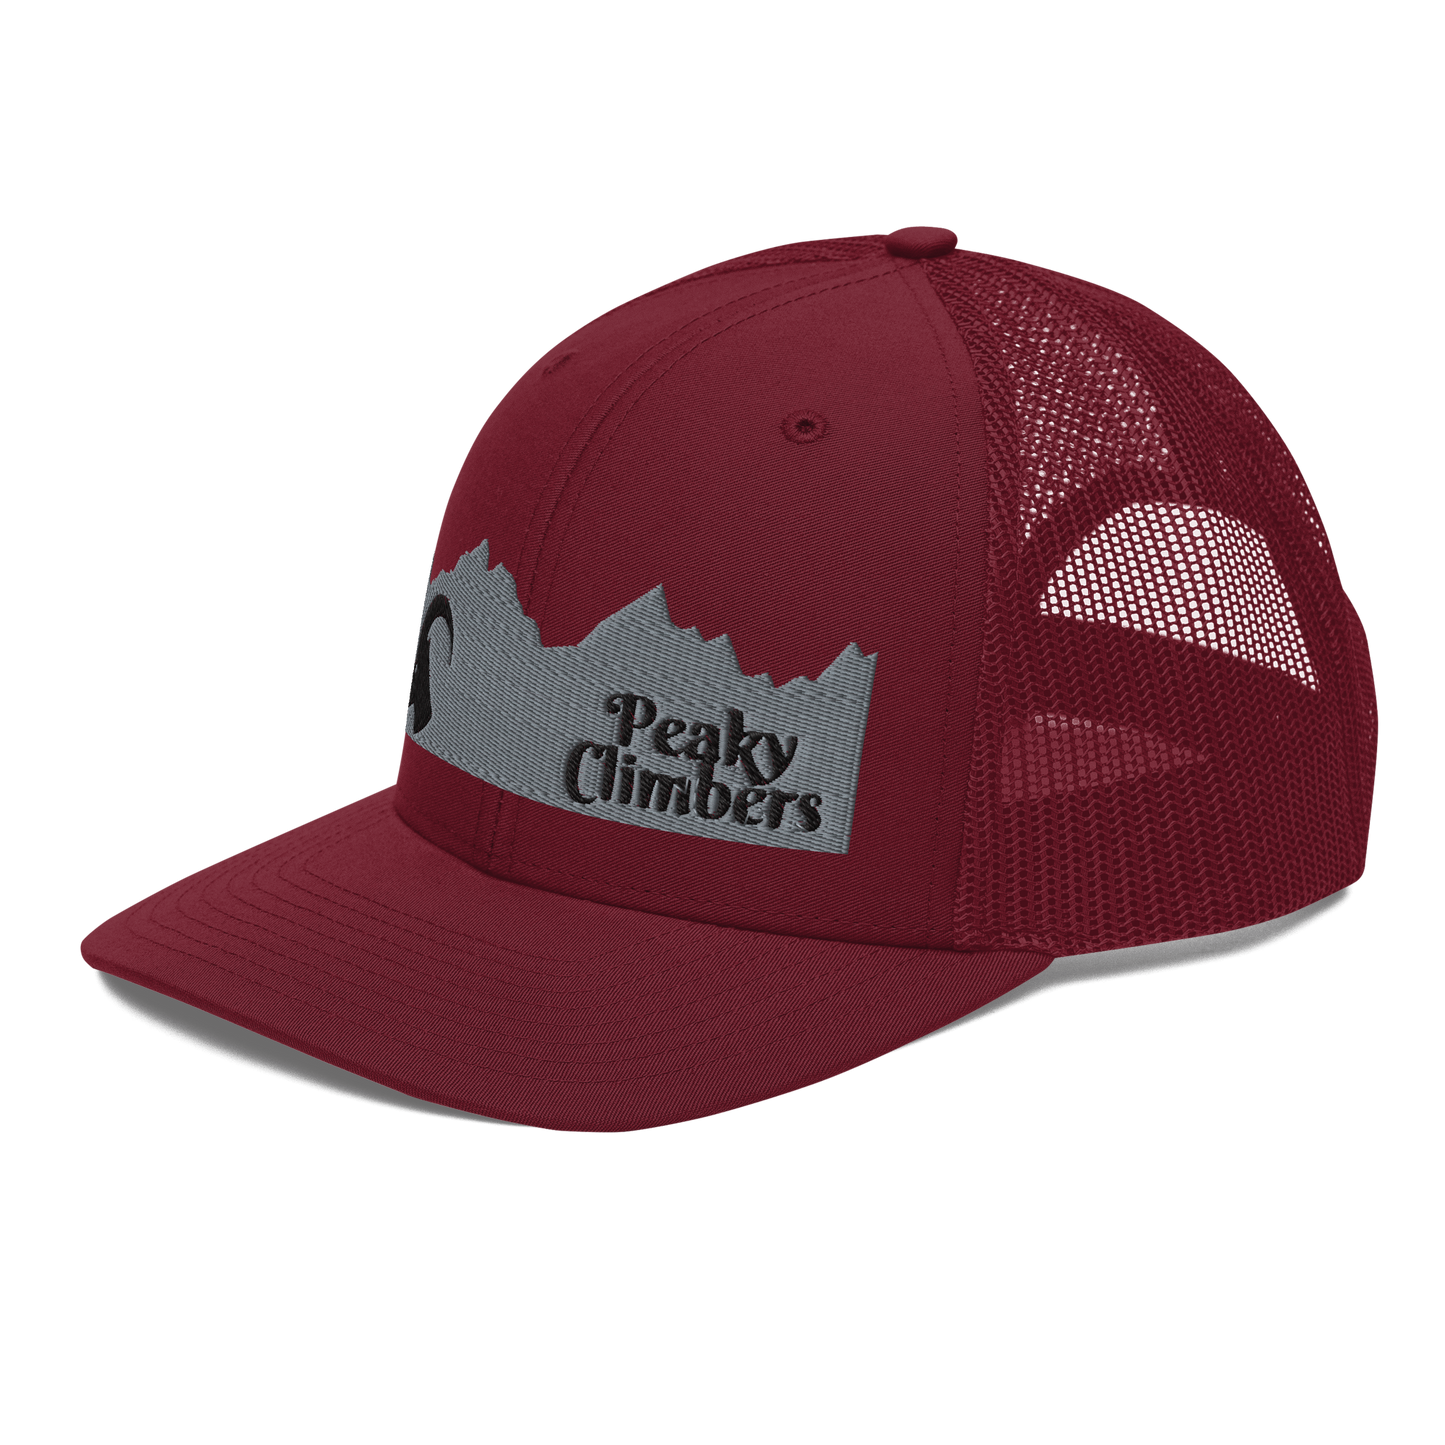 Peaky Edge Ibex Cap